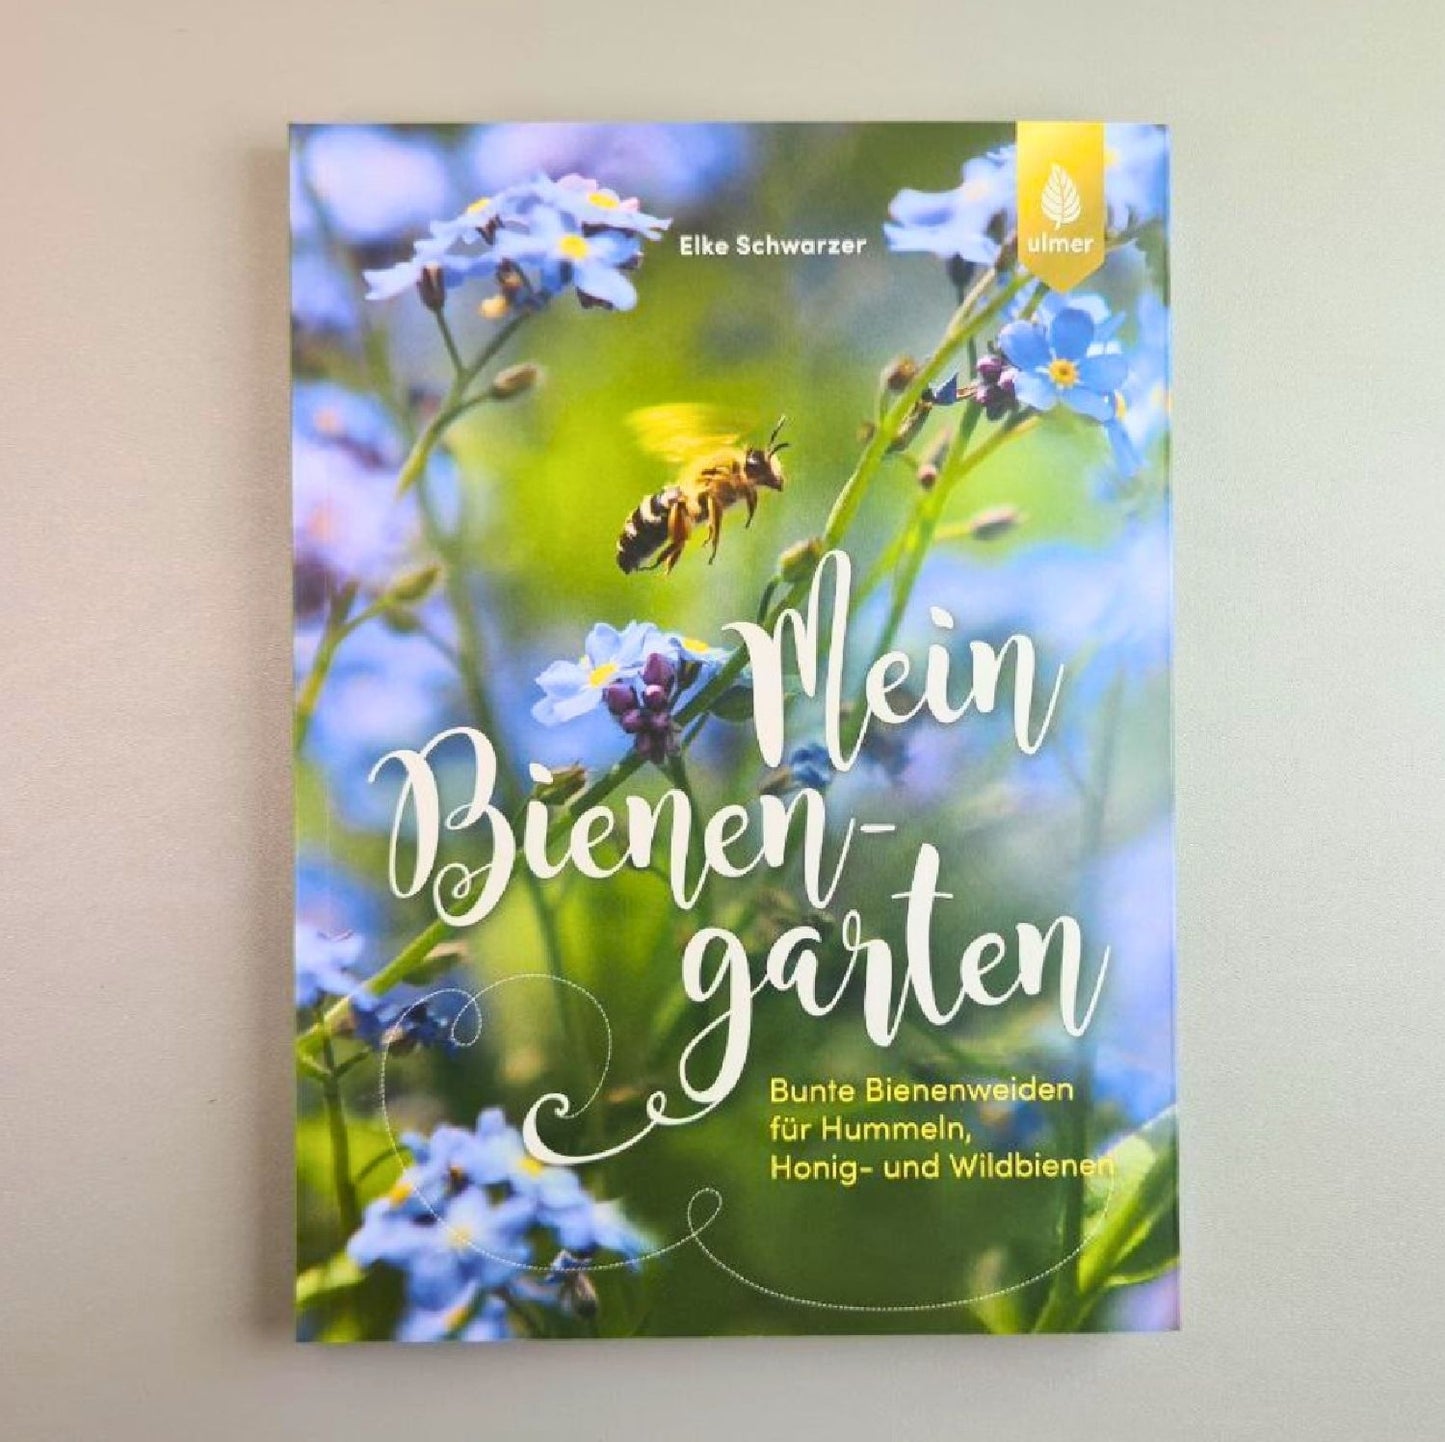 Mein Bienengarten, erweiterte Auflage (Elke Schwarzer)